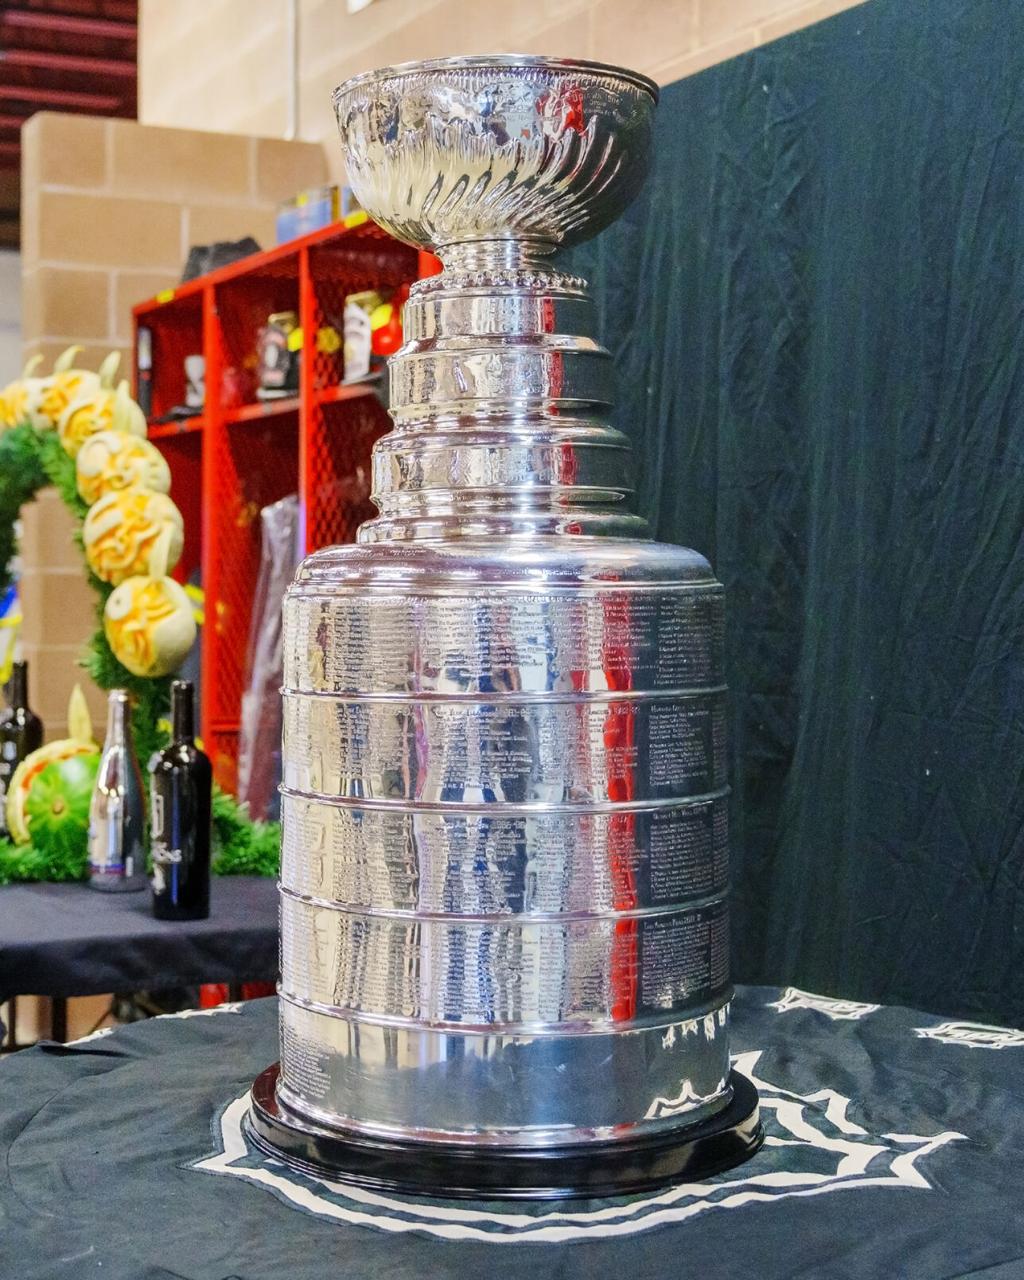 Stanley Cup comes to Fruita, Western Colorado